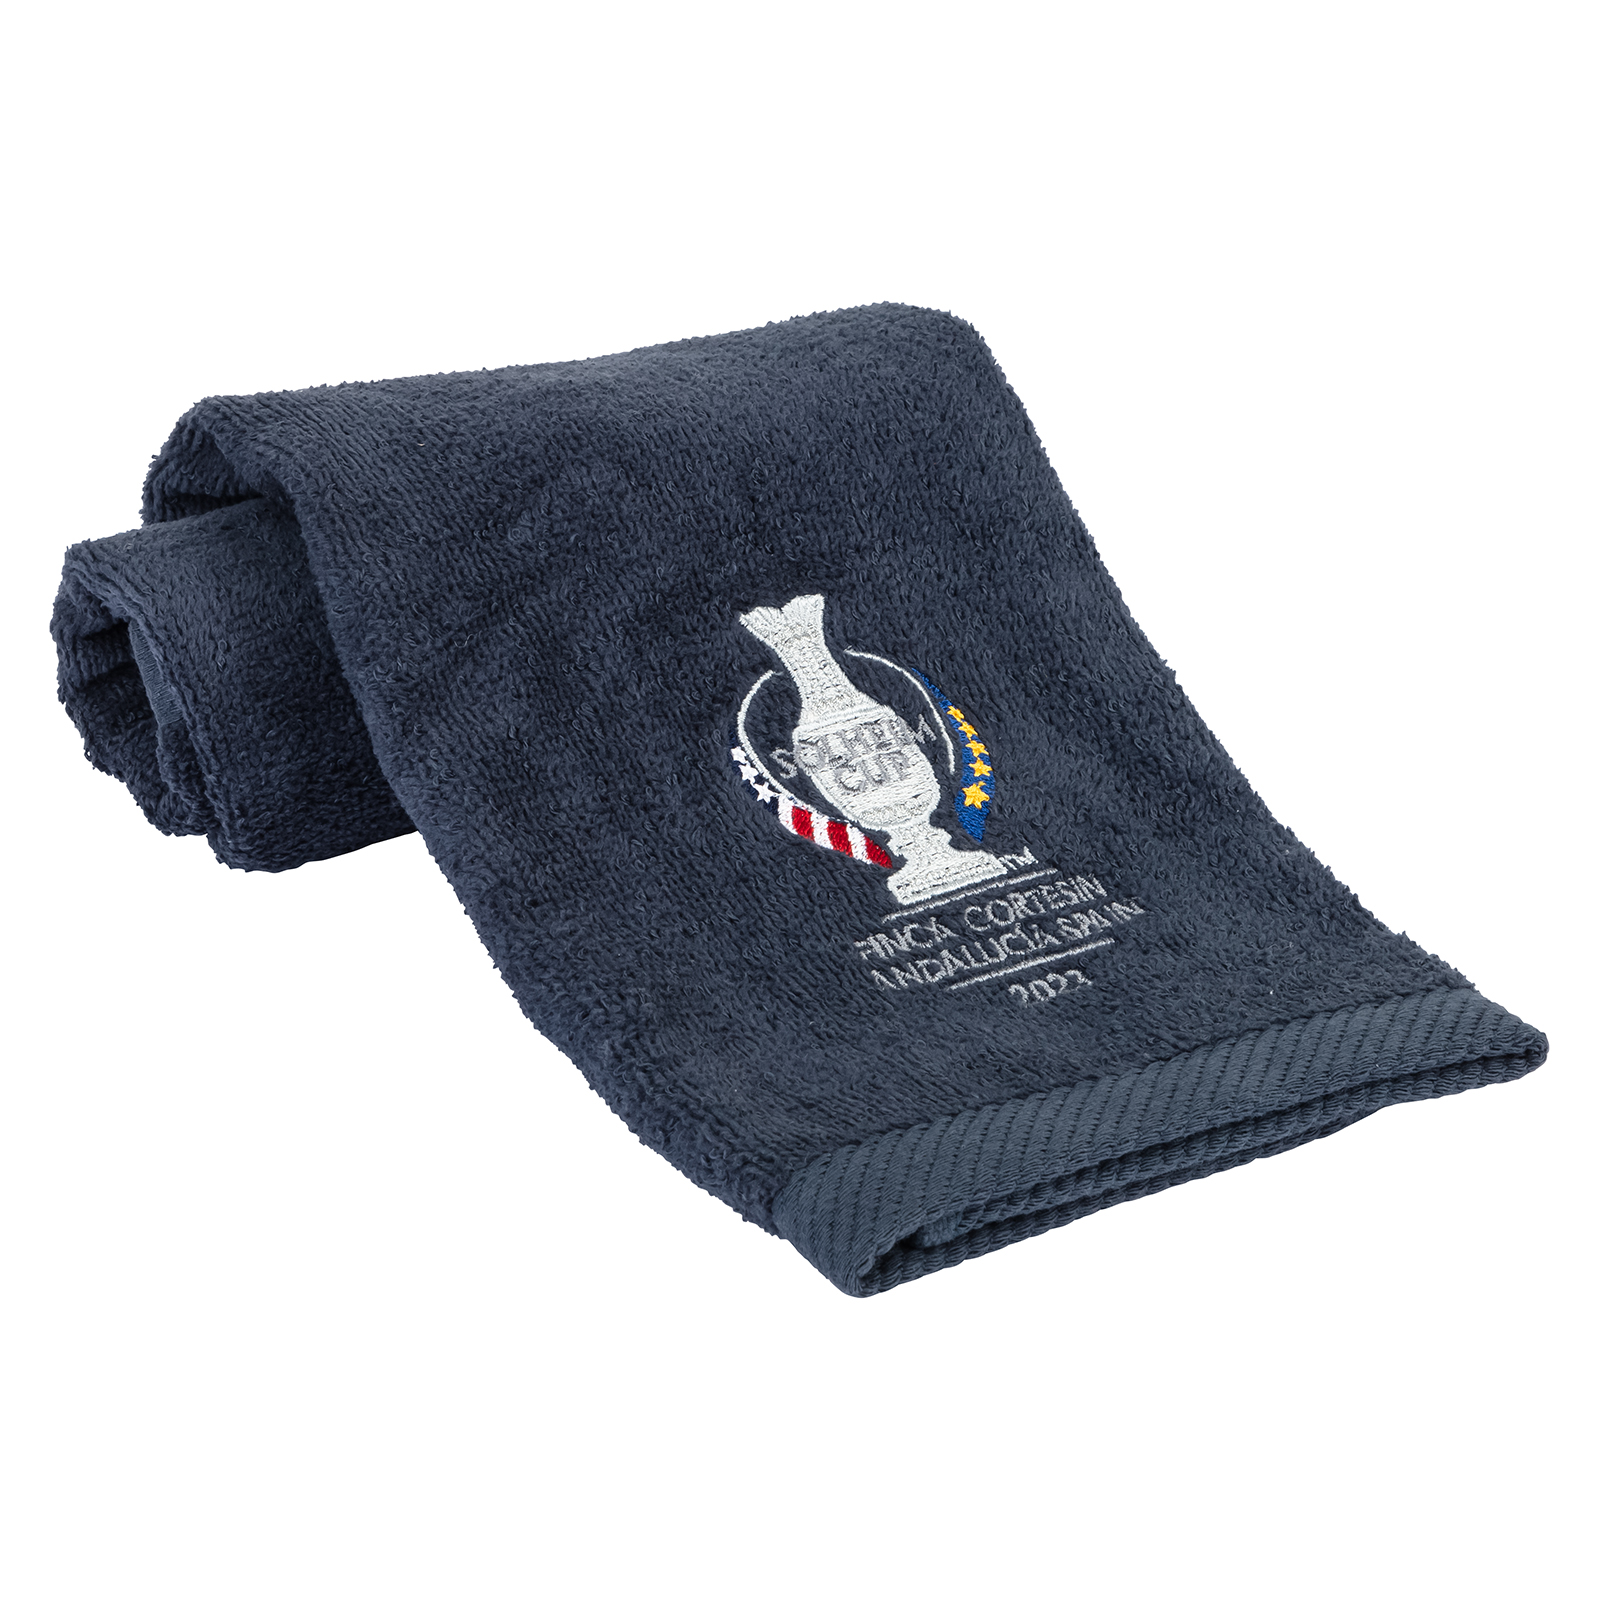 Weiches Golf Handtuch aus Baumwolle im Solheim Cup Design